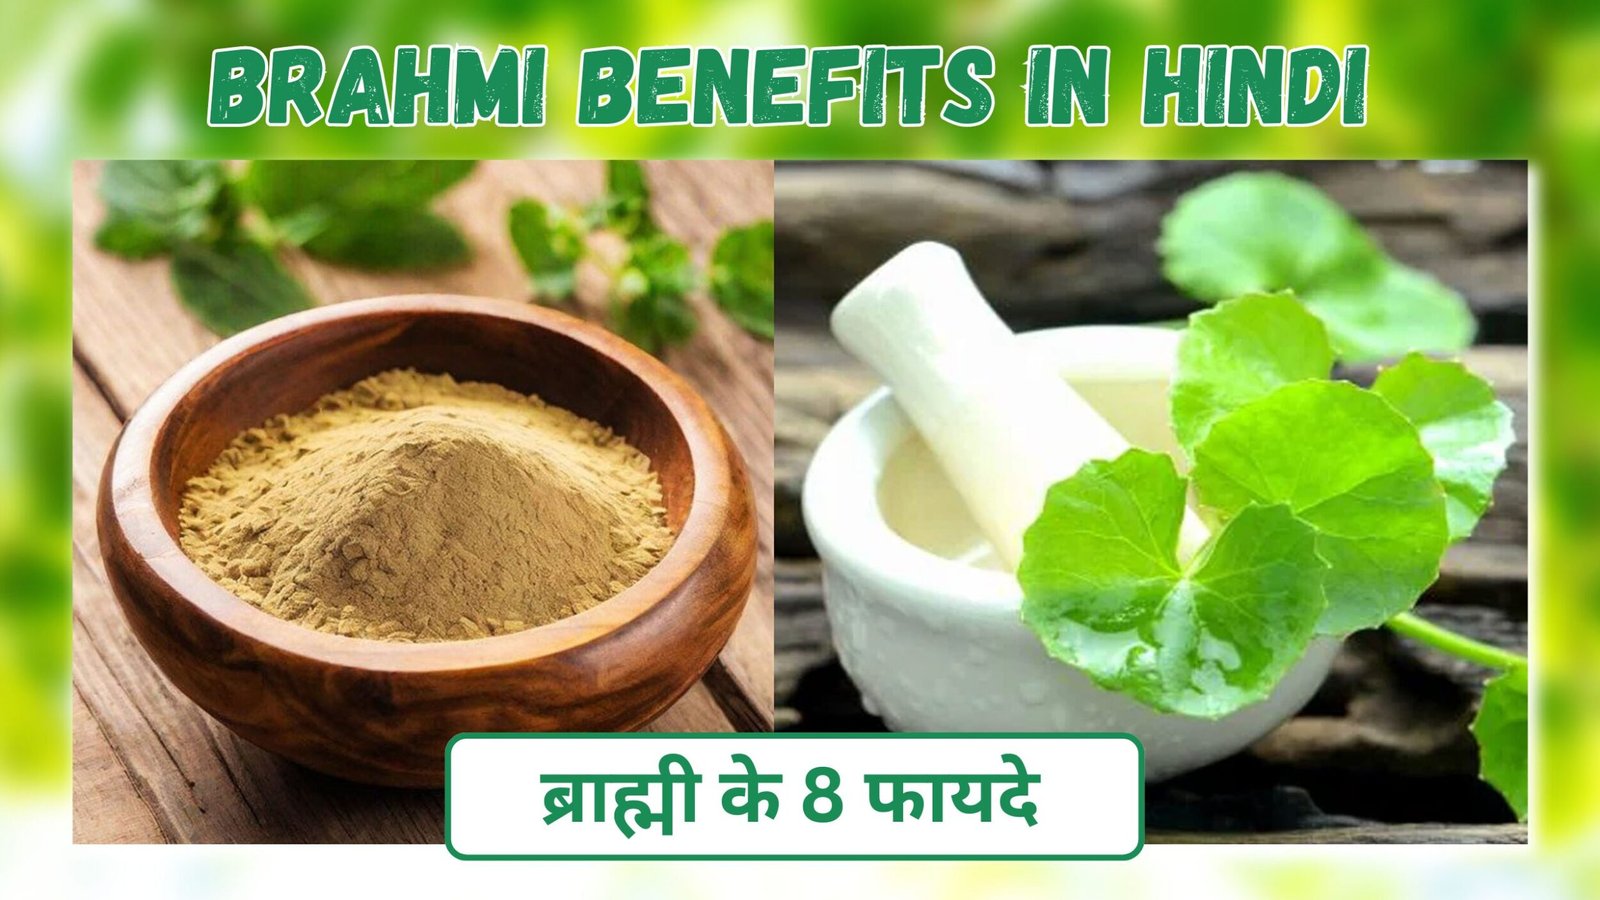 Benefits of Brahmi in hindi | बालों व अन्य रोगो के लिए ब्राह्मी के 7 फायदे